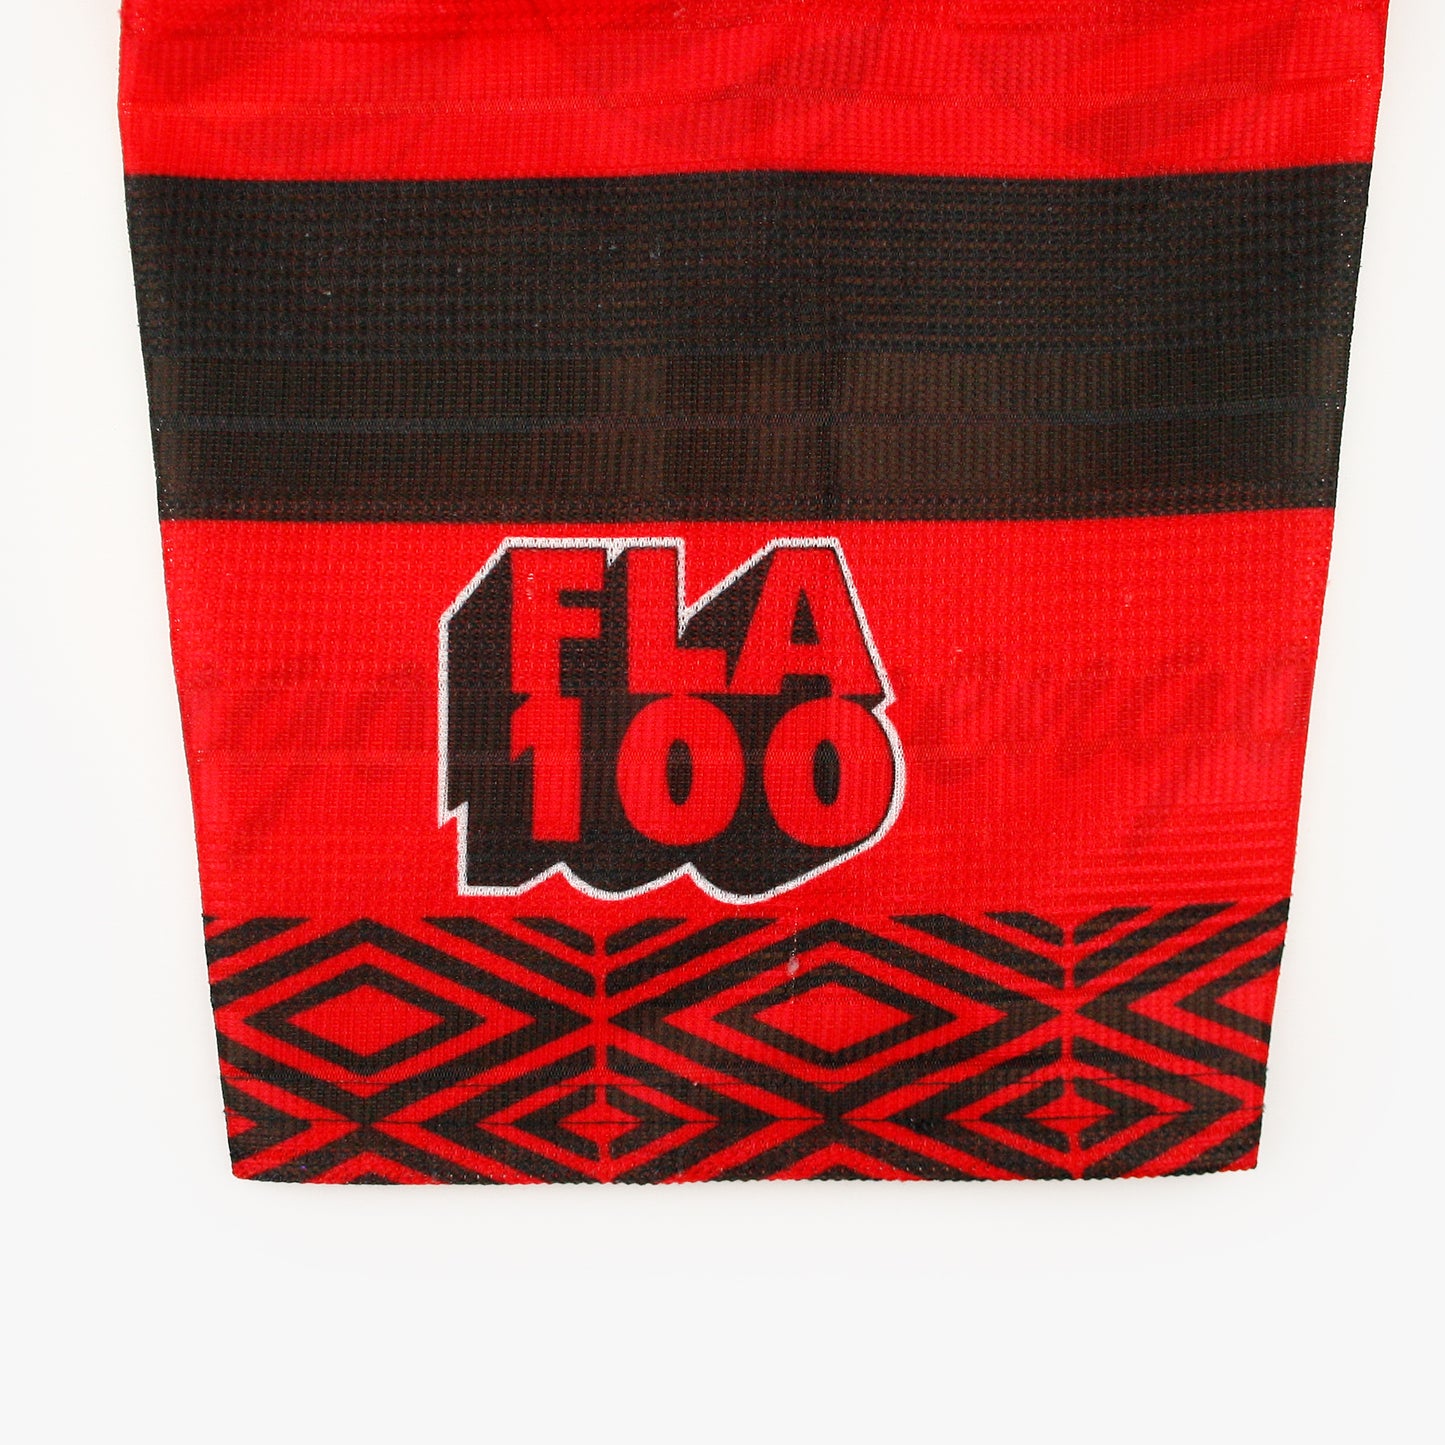 Flamengo 97/98 • Camiseta Local • L